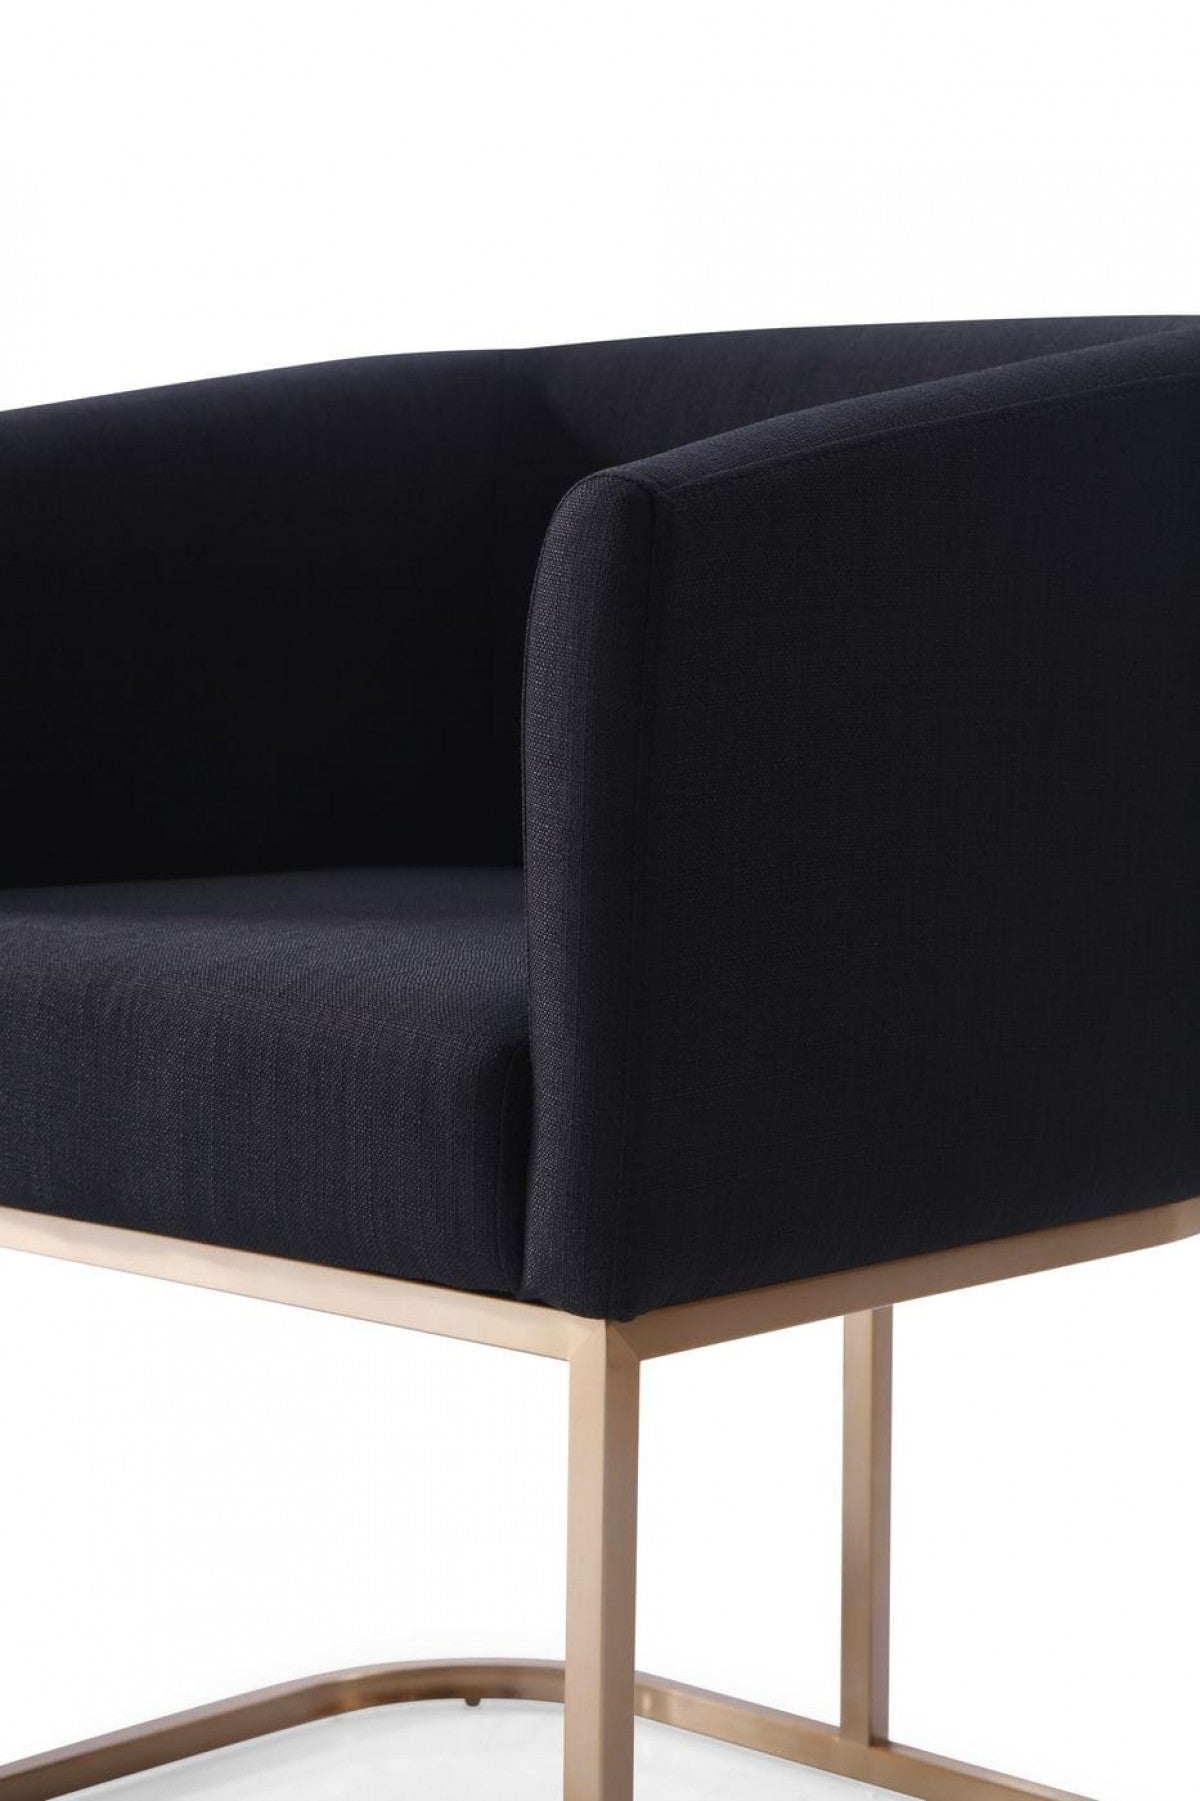 Ren Modern Black Fabric & Antique Brass Dining Chair